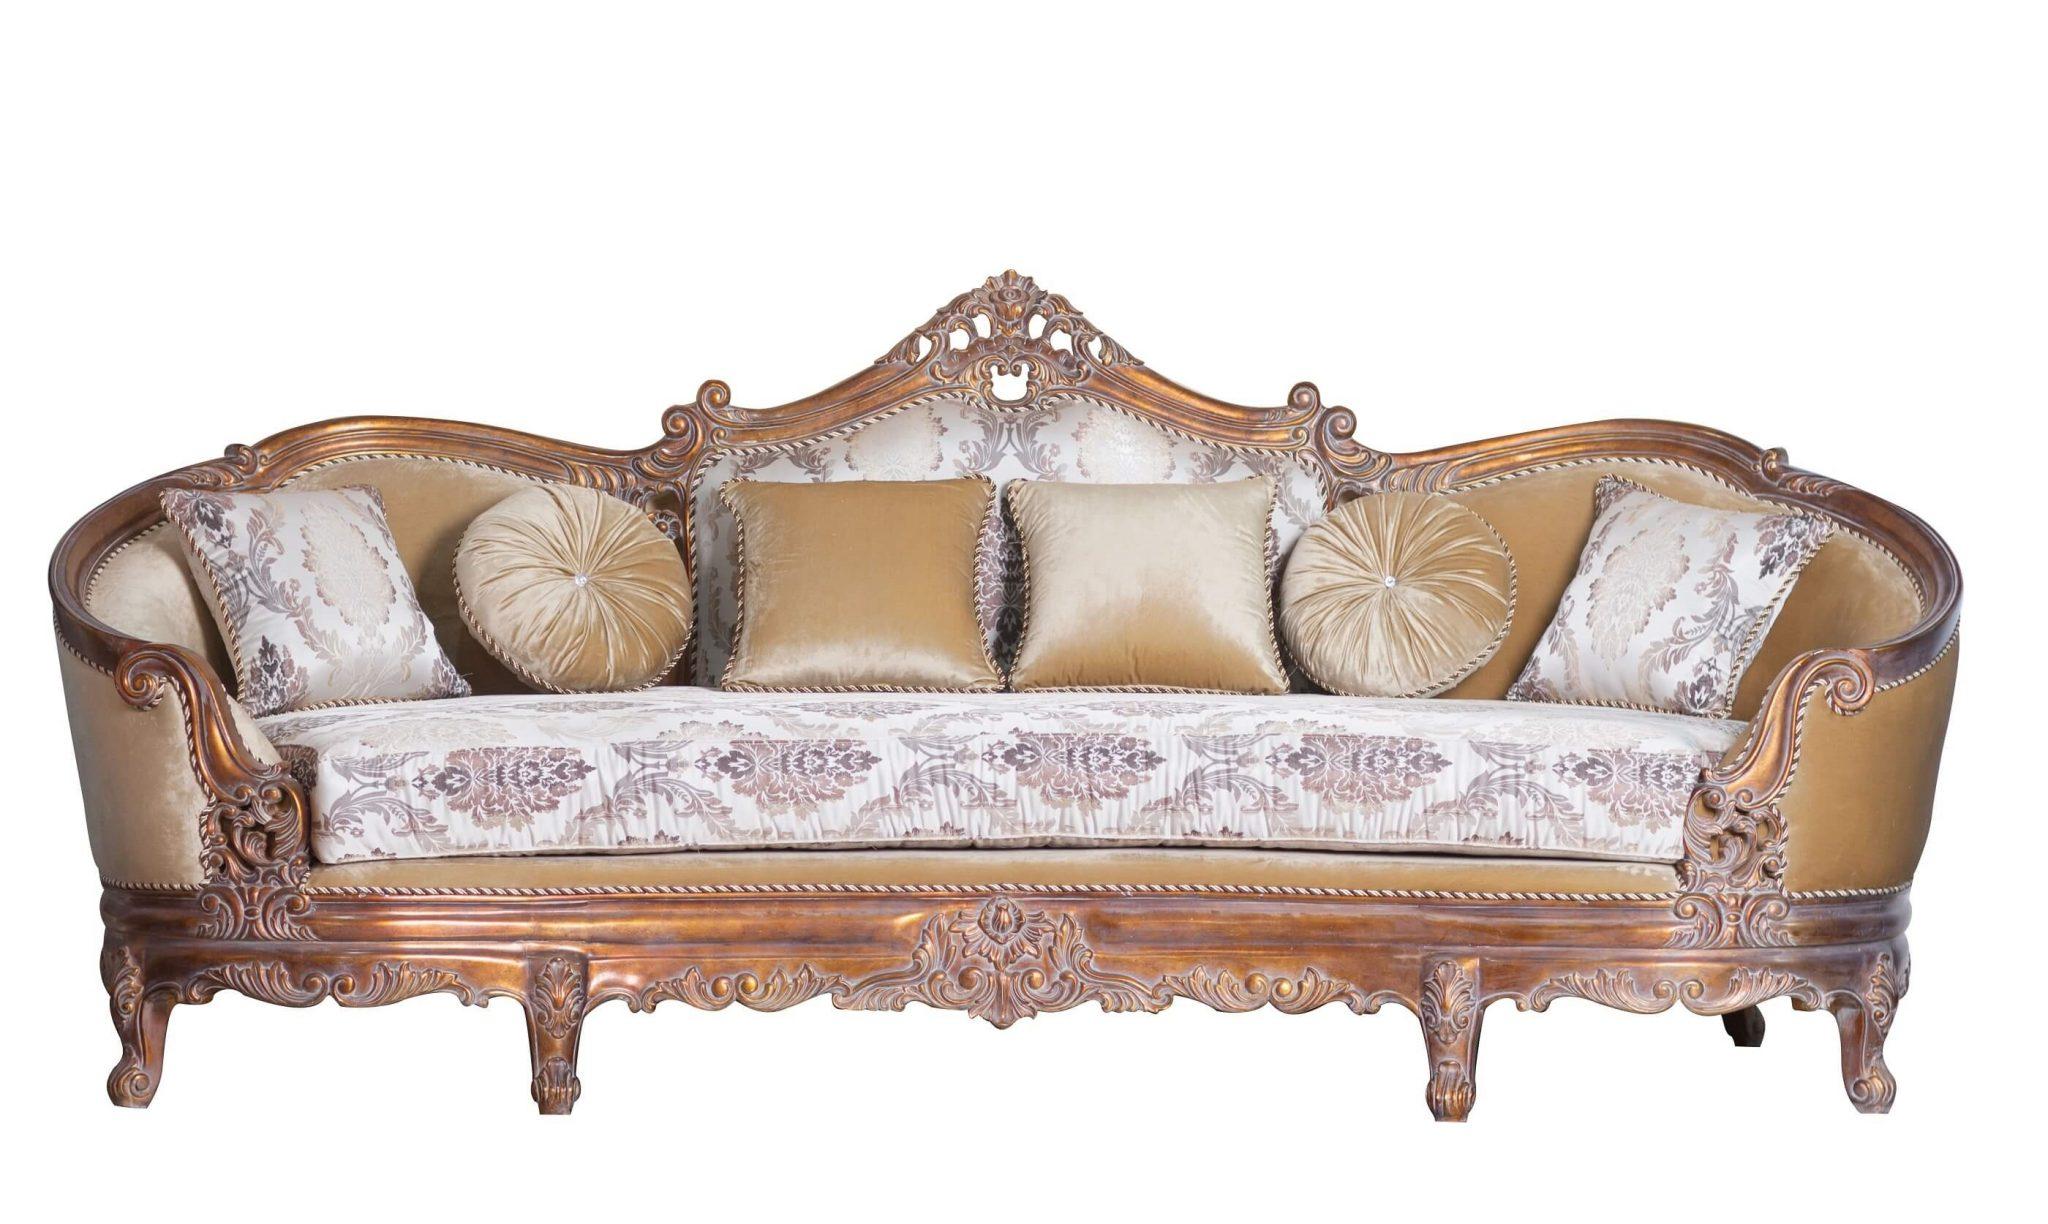 

    
Luxury Antique Dark Cooper Wood Trim VICTORIAN Sofa Set 2 Pcs EUROPEAN FURNITURE
